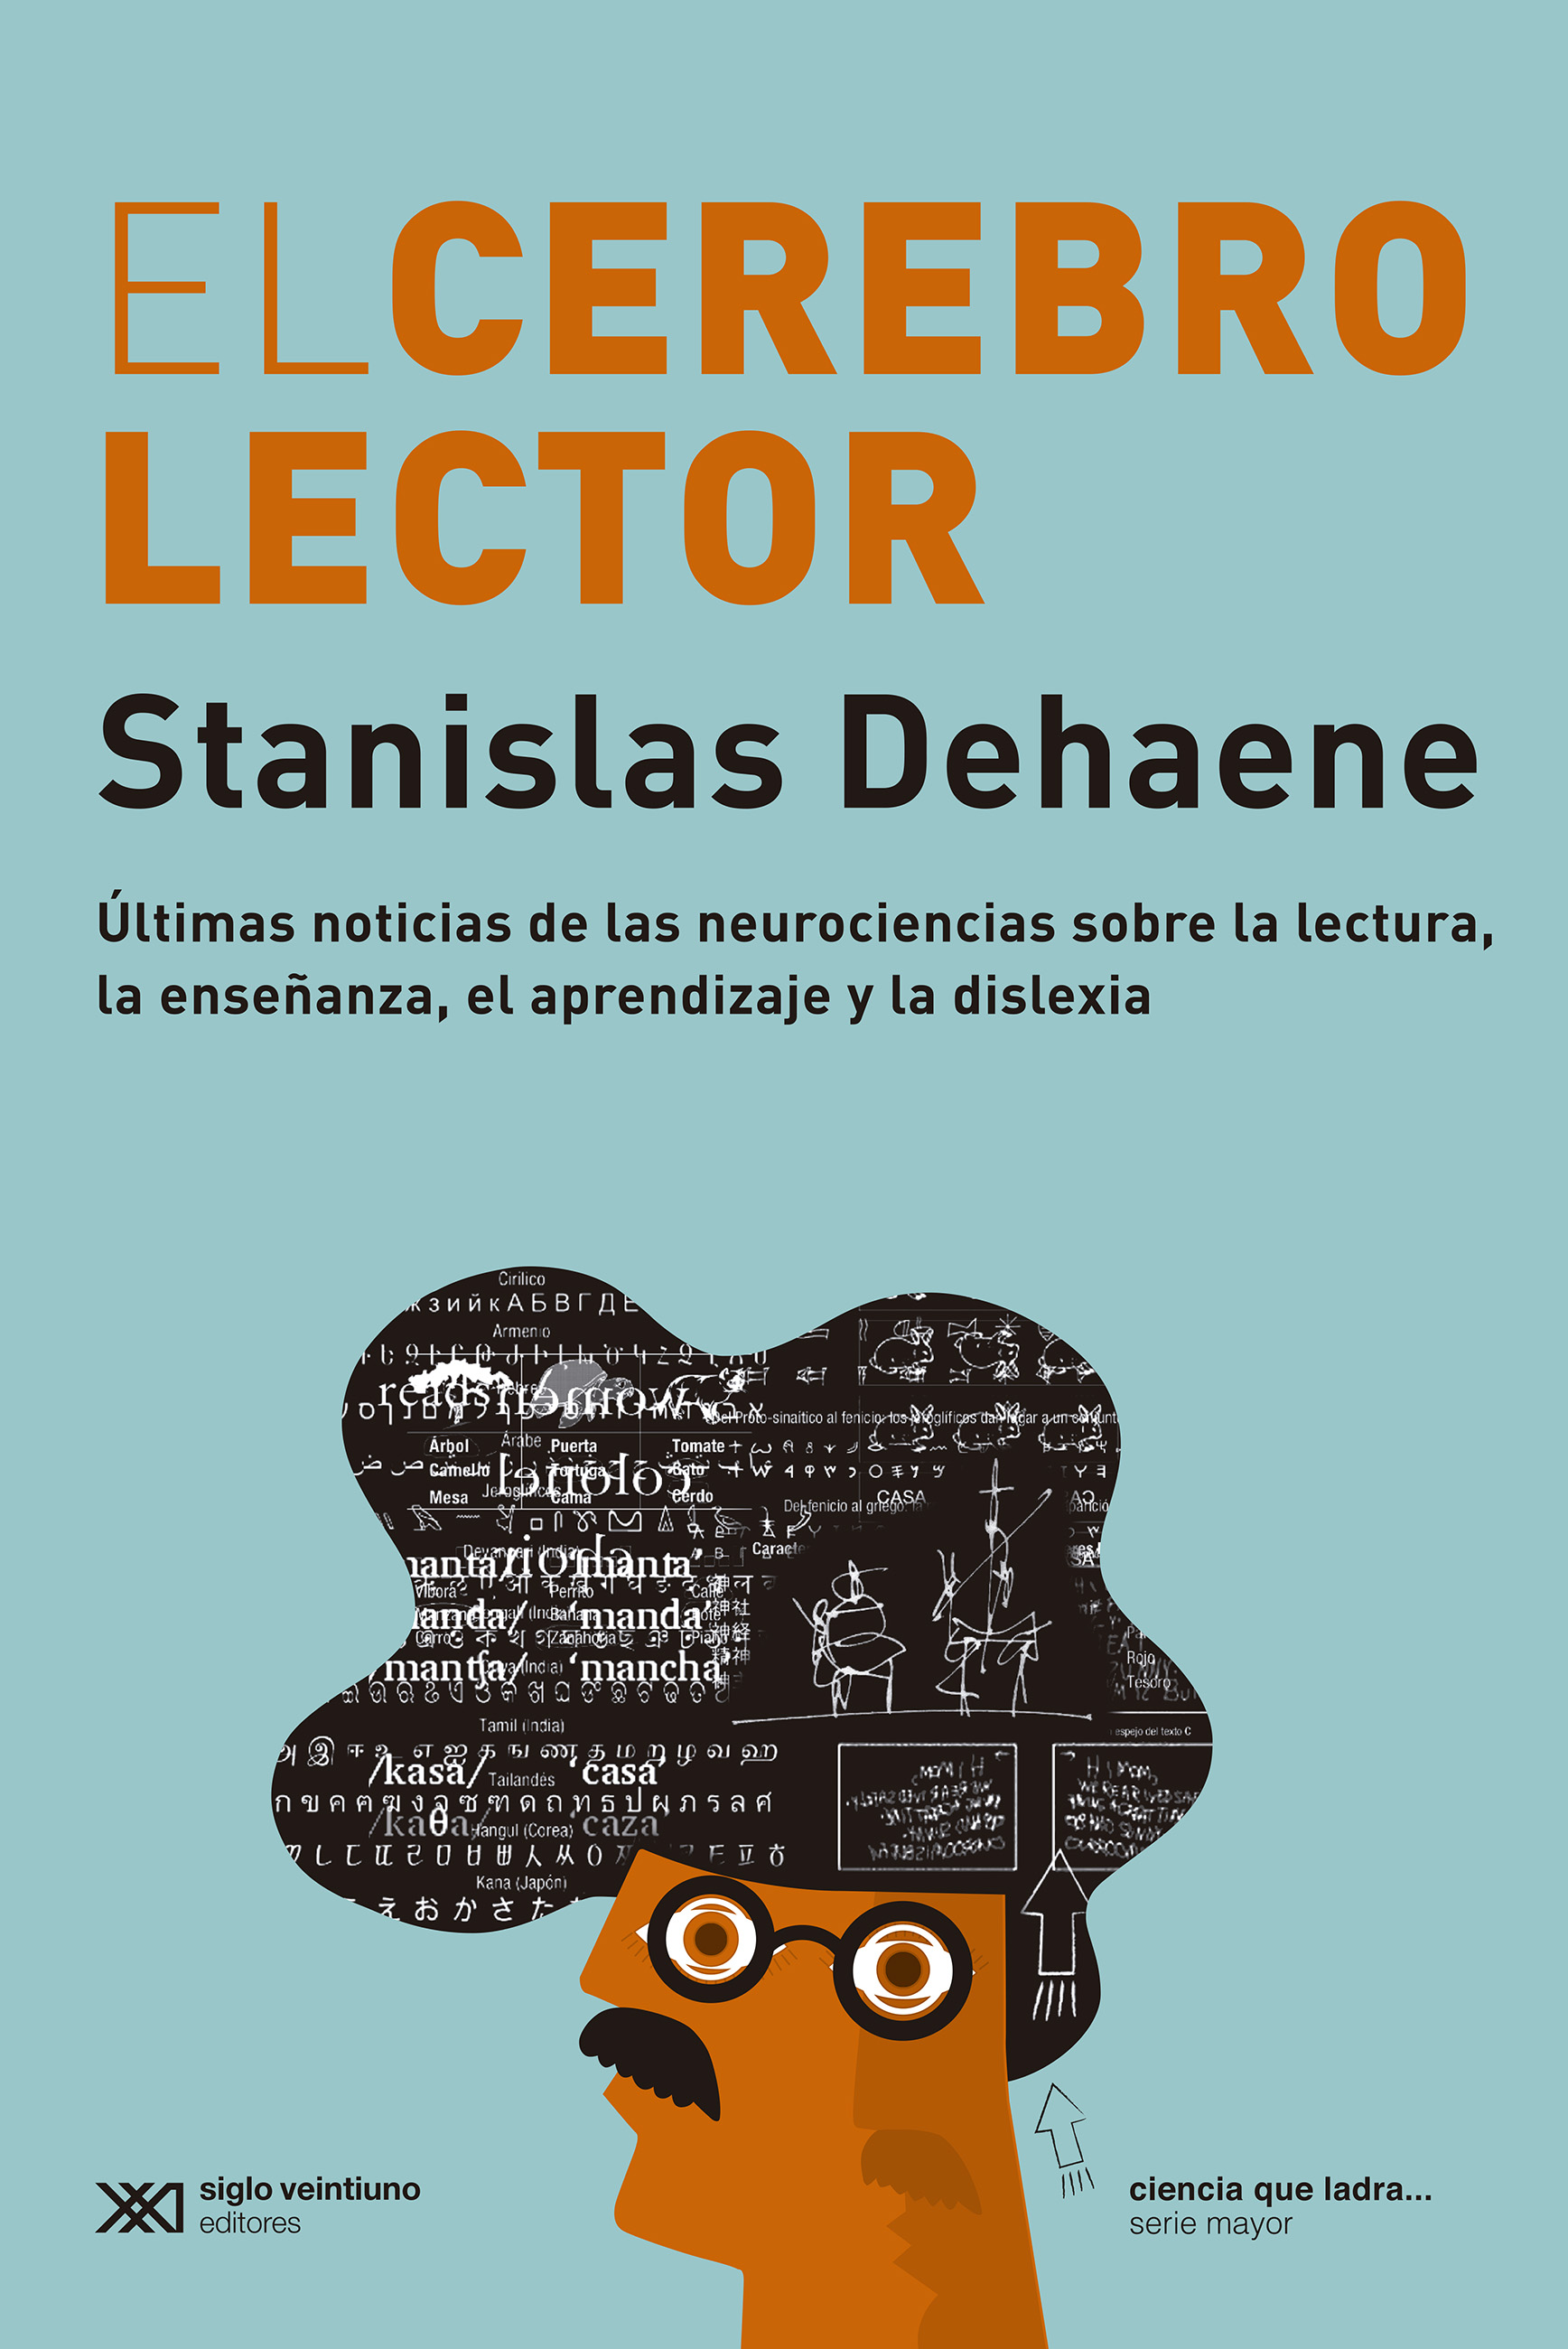 El cerebro lector - Stanislas Dehaene